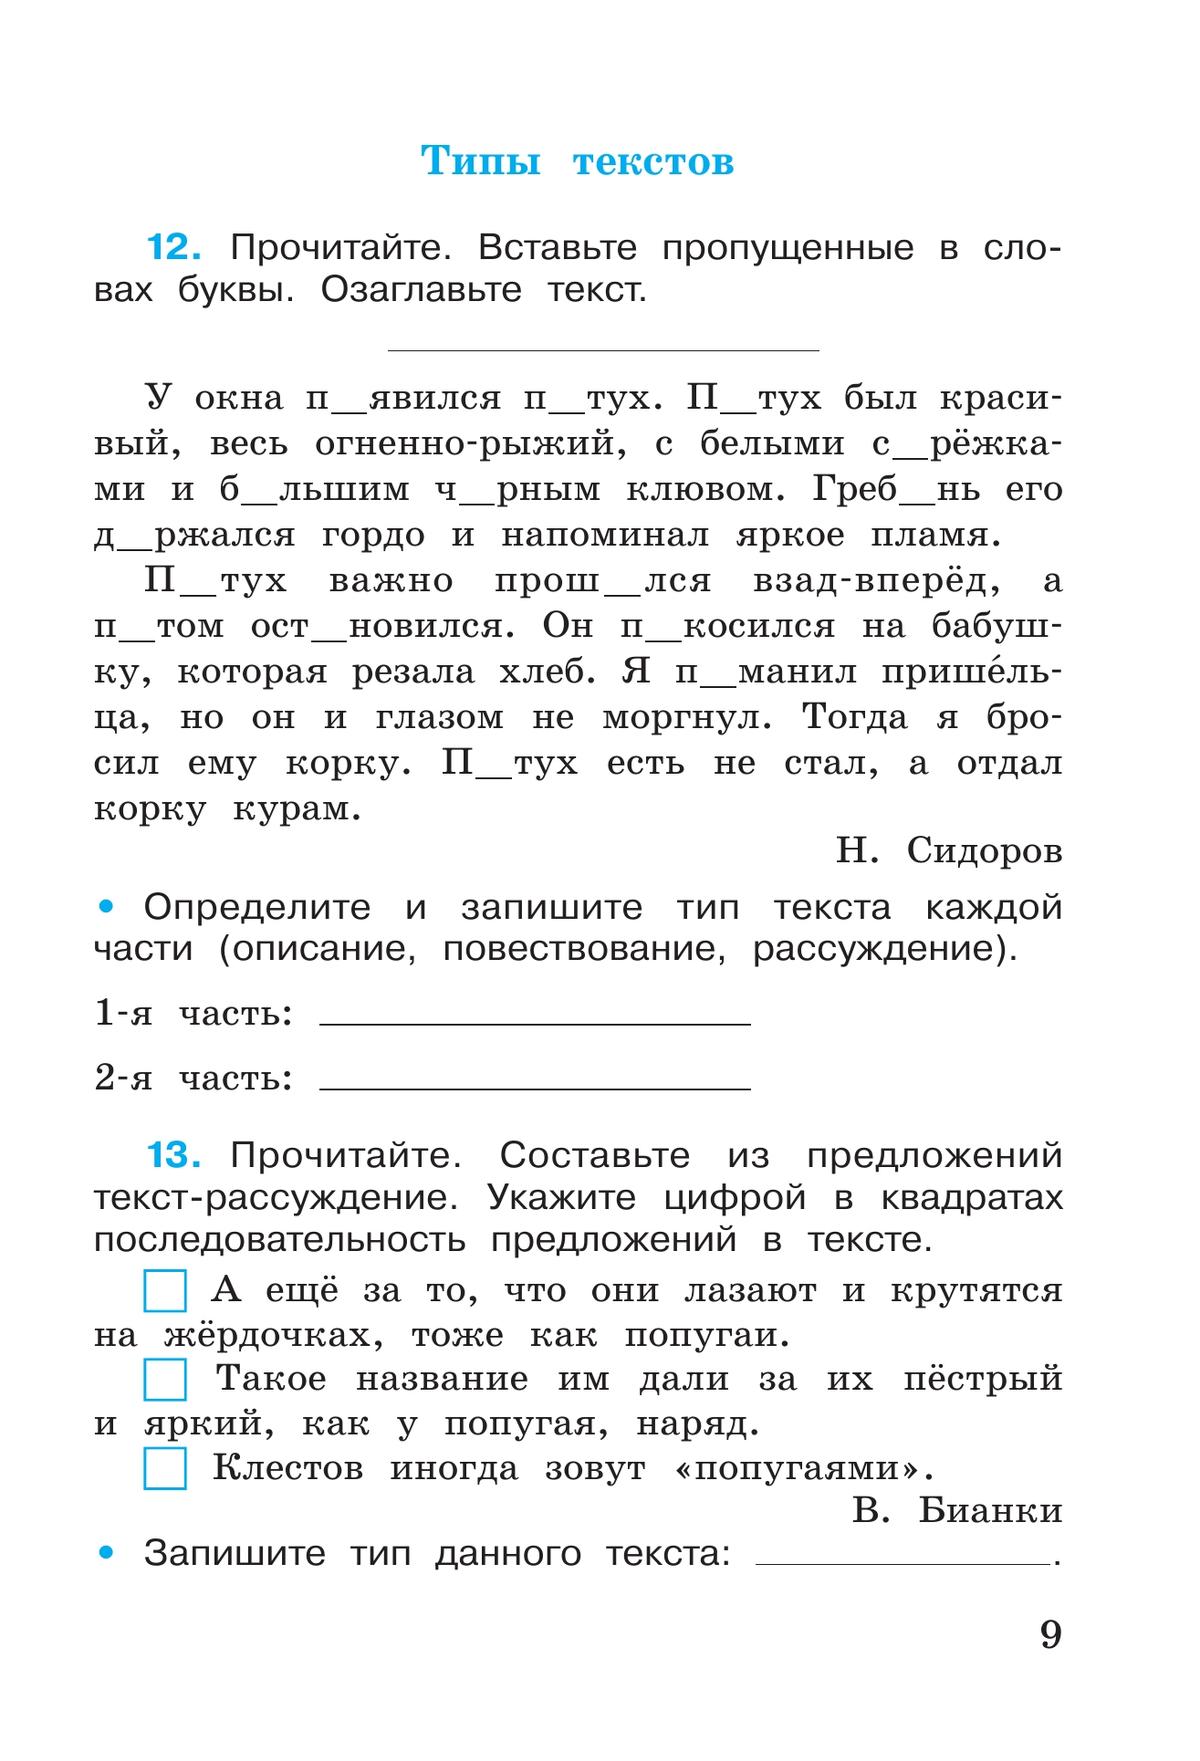 Русский язык. Рабочая тетрадь. 4 класс. В 2 частях. Часть 1 8